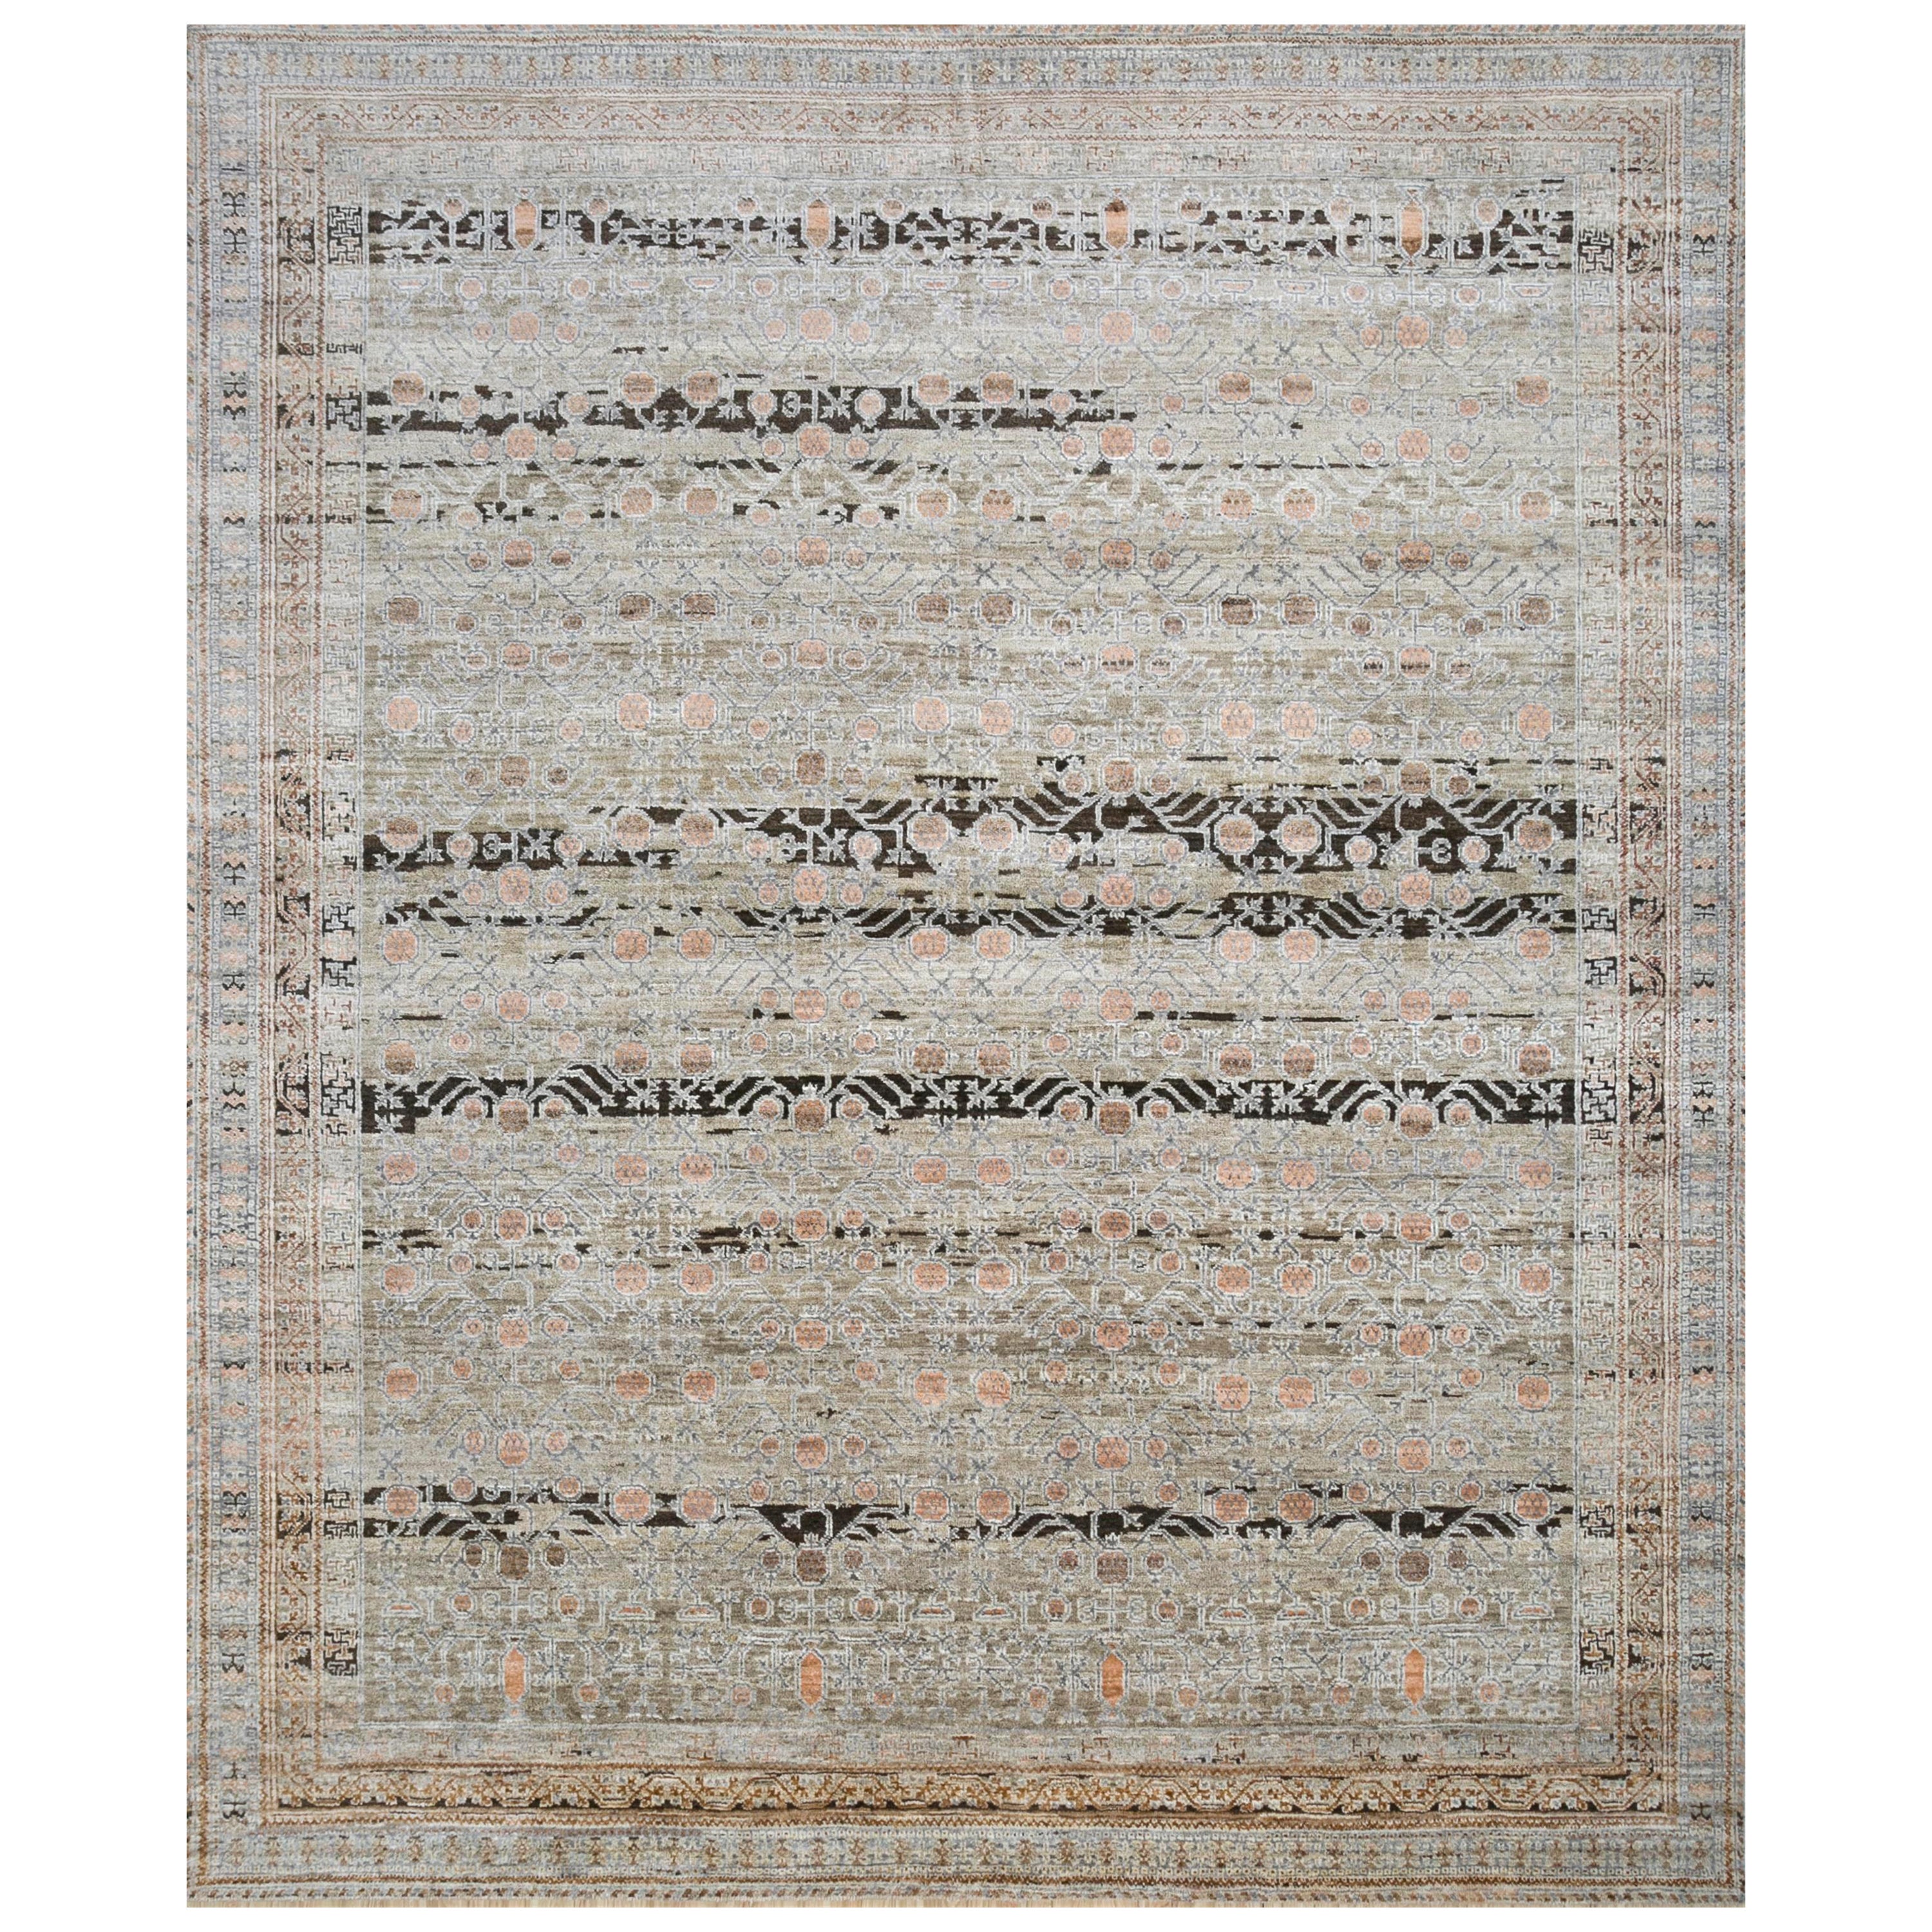 Handgeknüpfter Teppich in Elysian Elegance aus Ton und Wolkenweiß 240X300 cm